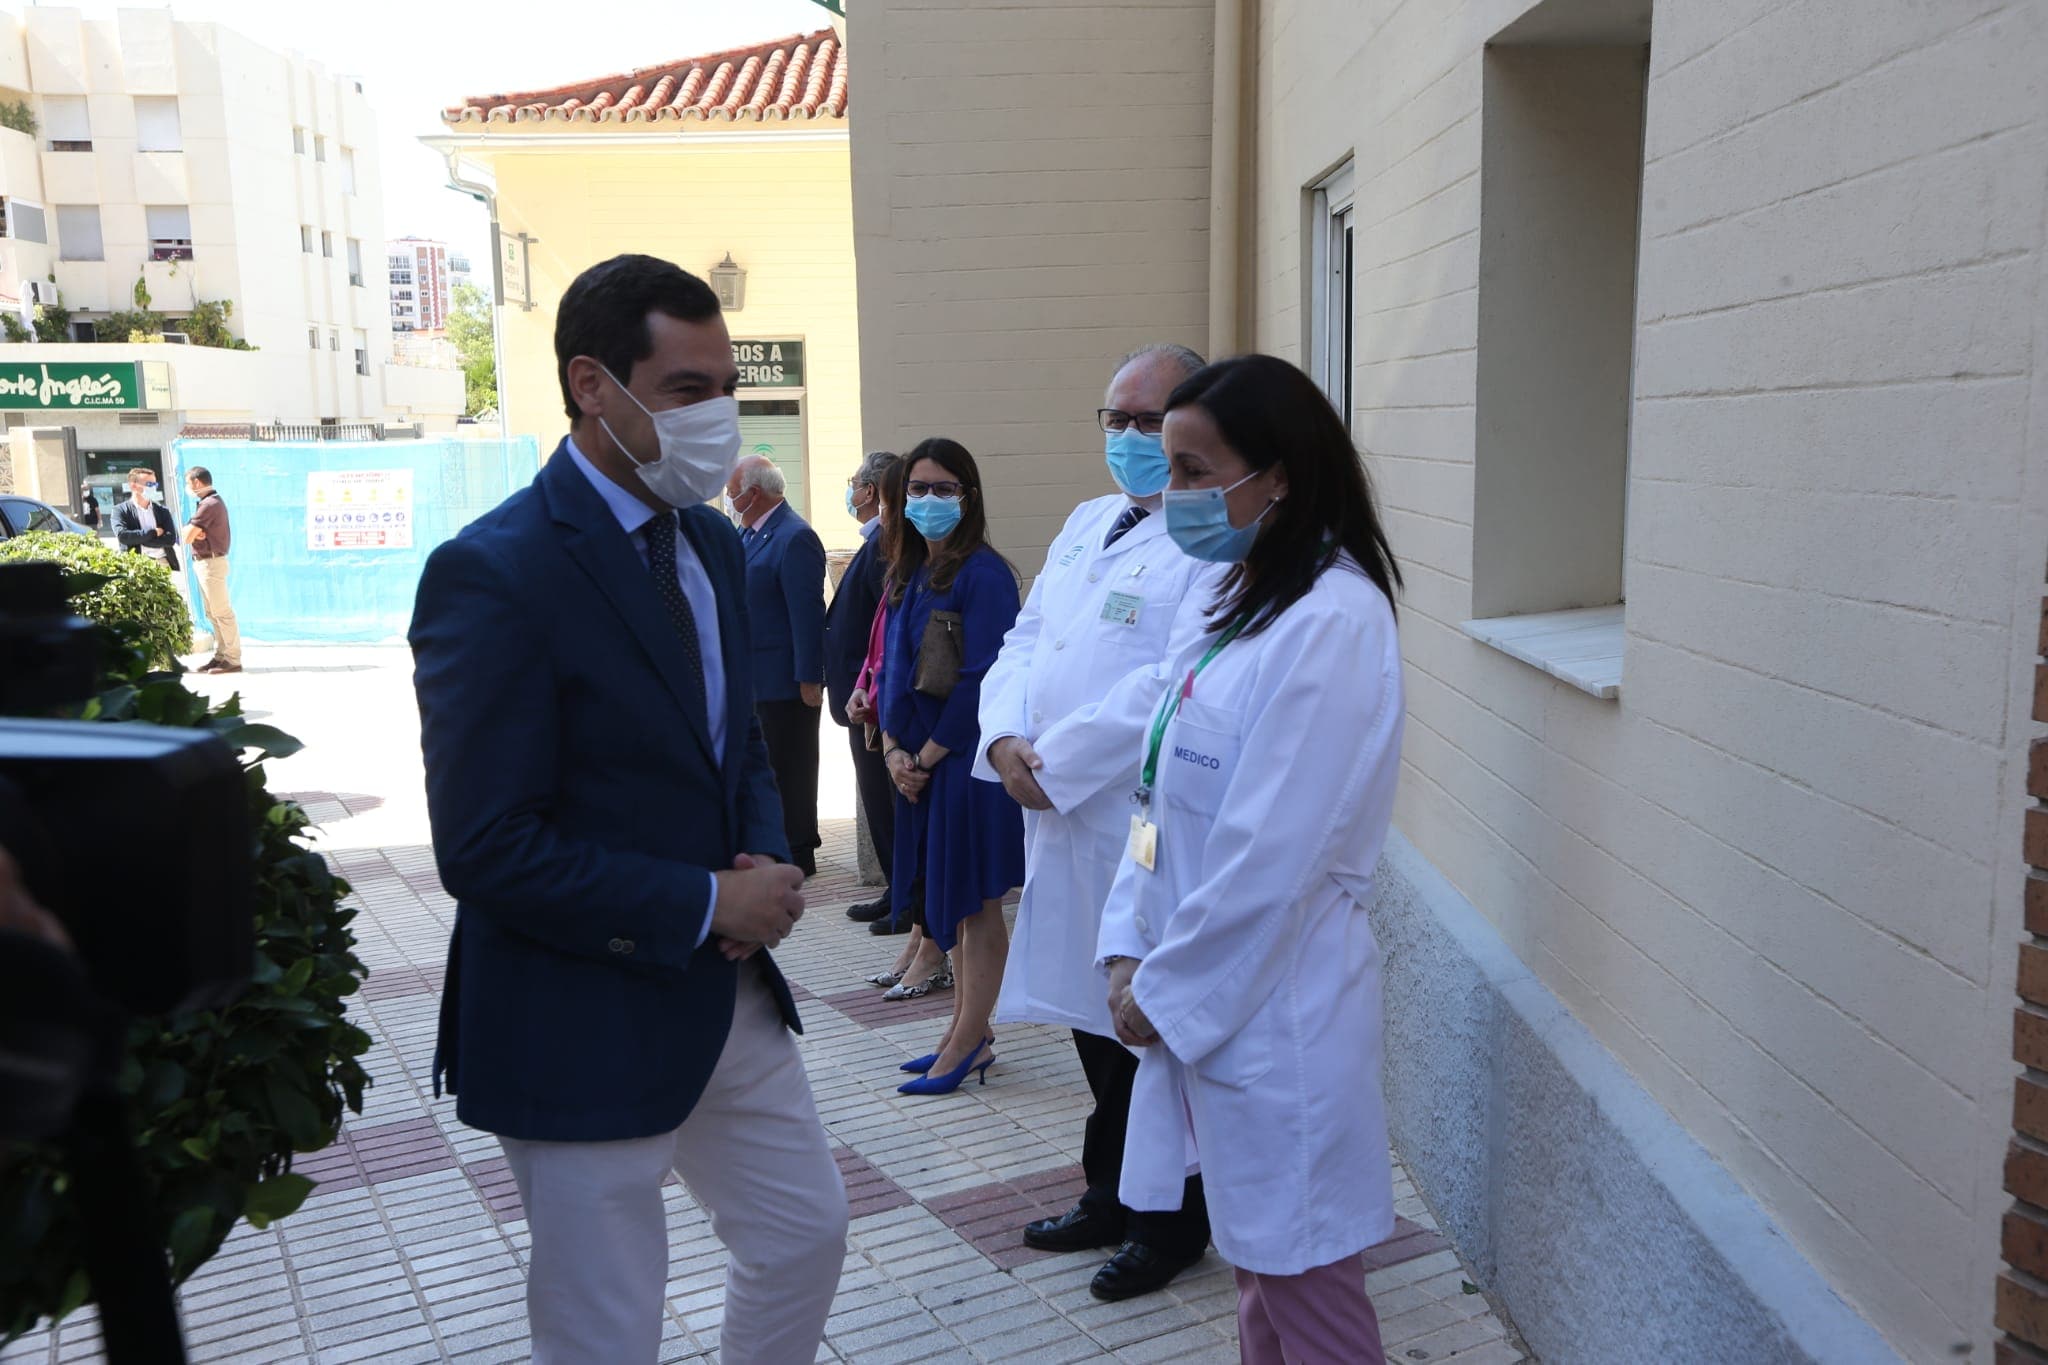 El presidente de la Junta de Andalucía visita este martes el Hospital Regional Universitario de Málaga para conocer el funcionamiento del robot Opentrons, que permite el análisis simultáneo de hasta cinco muestras de test PCR